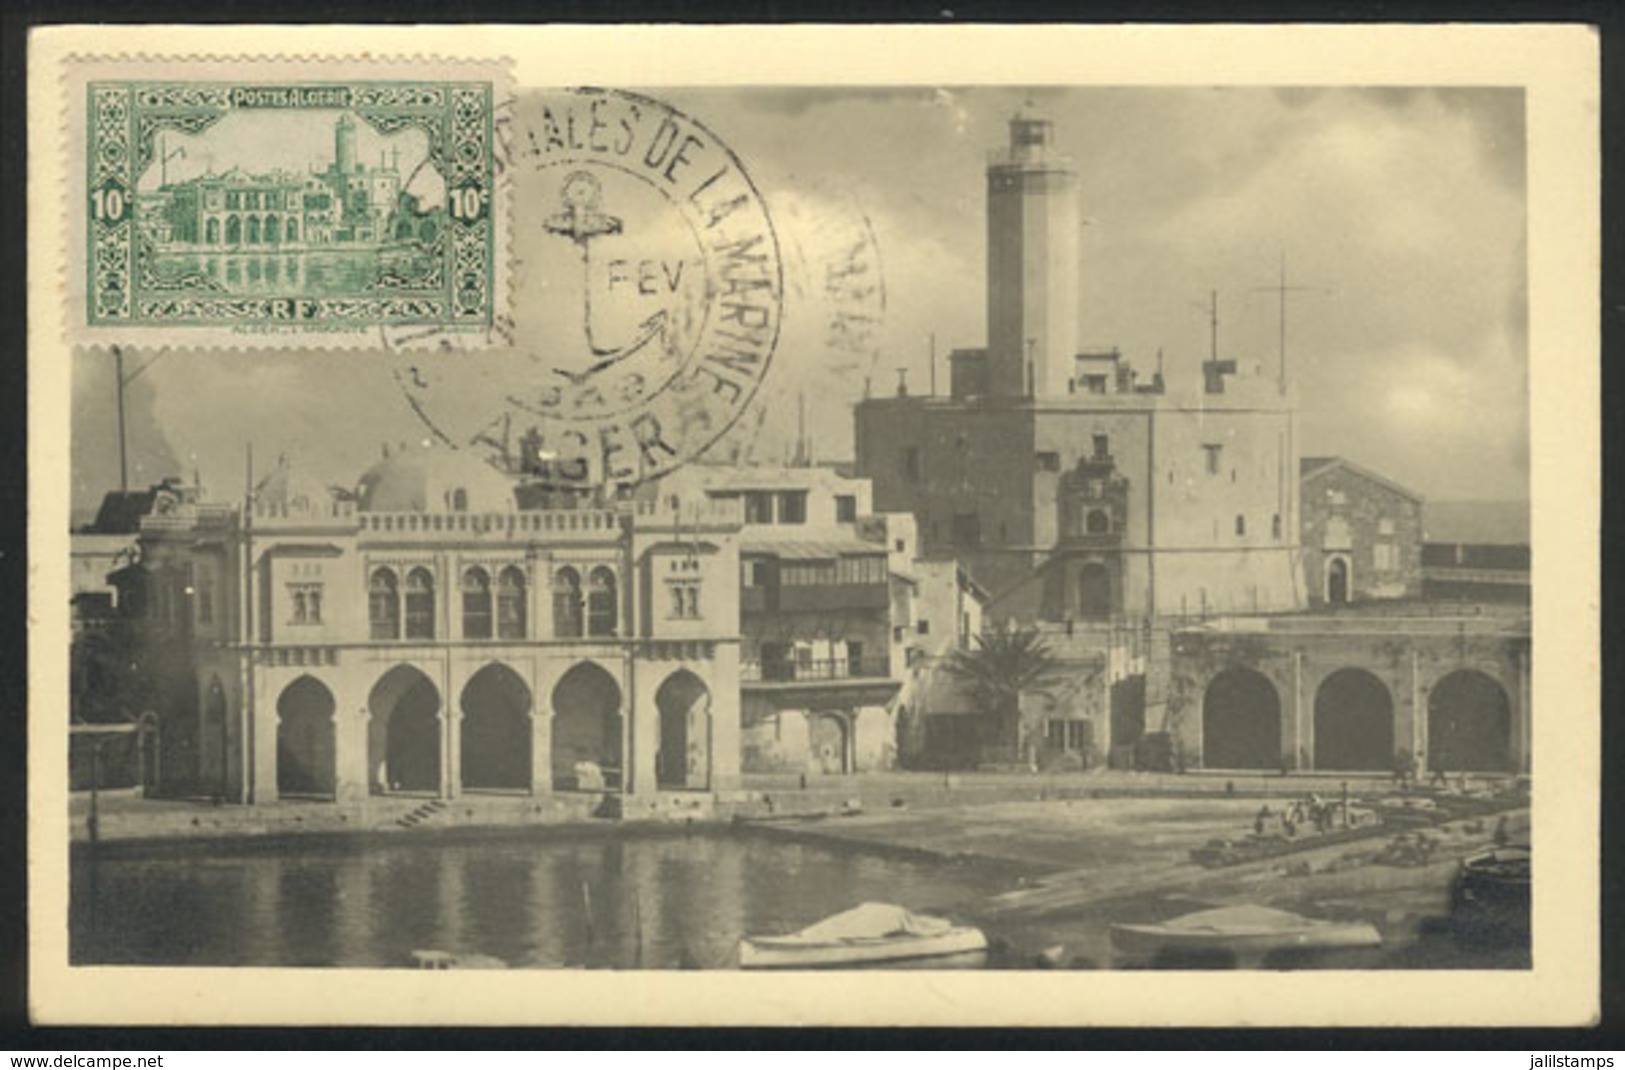 82 ALGERIA: ALGIERS: L'Amiraute, Architecture, Old Maximum Card, VF Quality - Argelia (1962-...)